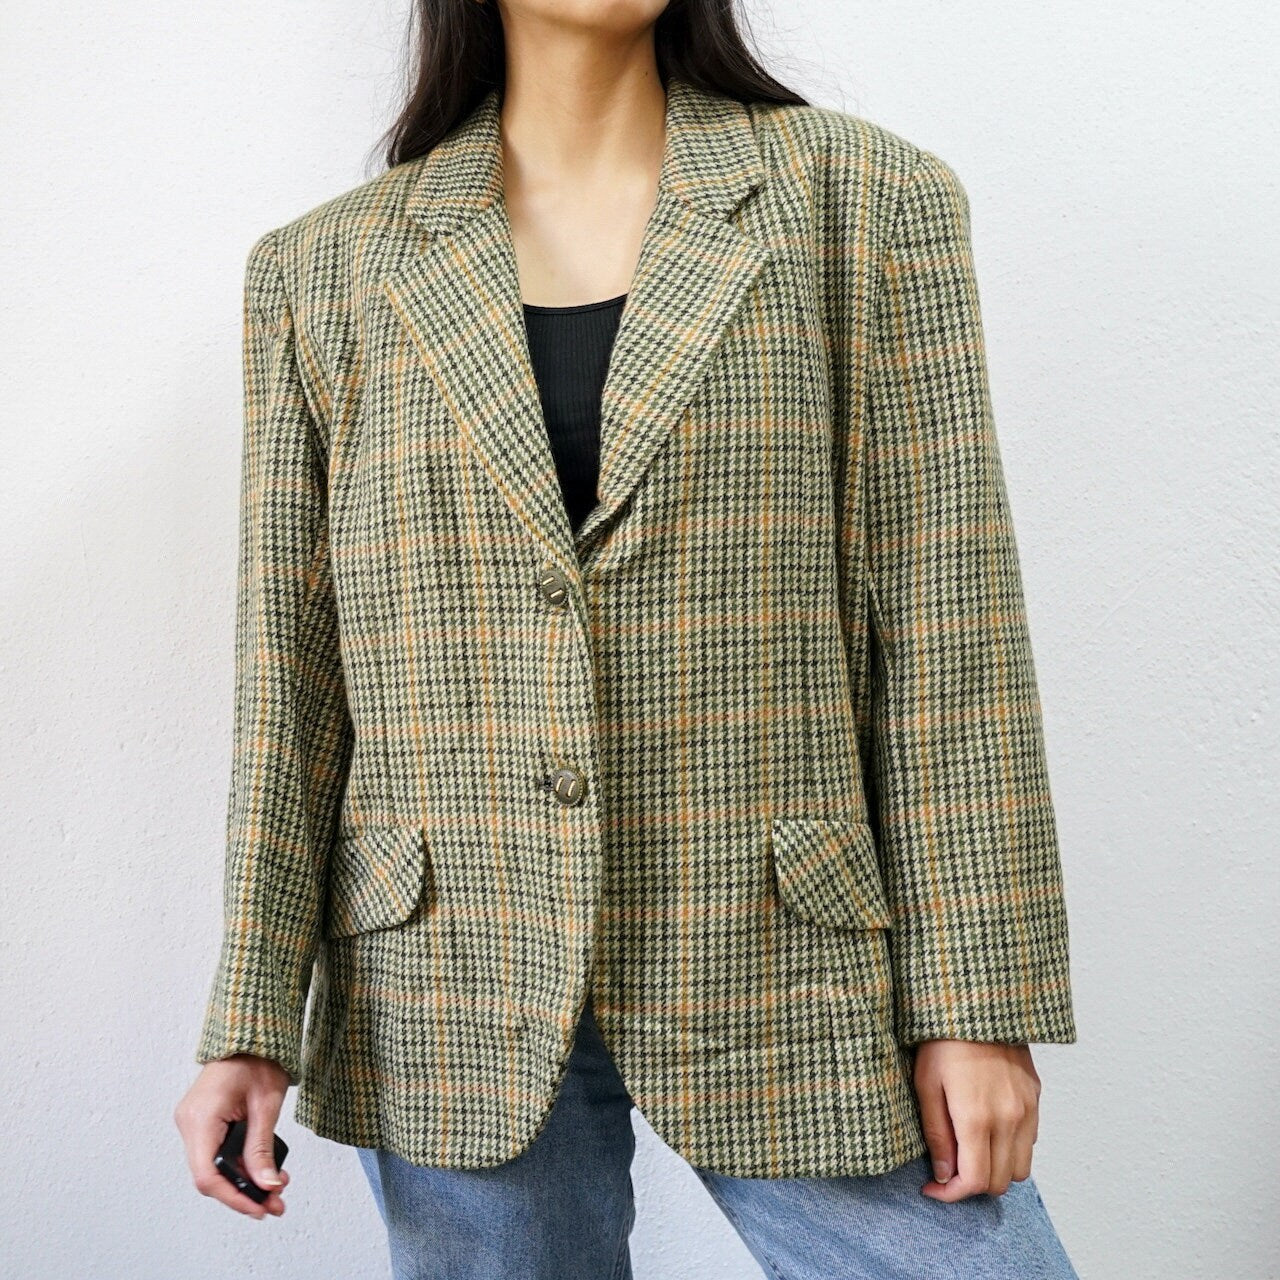 Vintage green yellow Blazer Size M checkered wool jacket shoulder pads blazer 90s blazer jacket